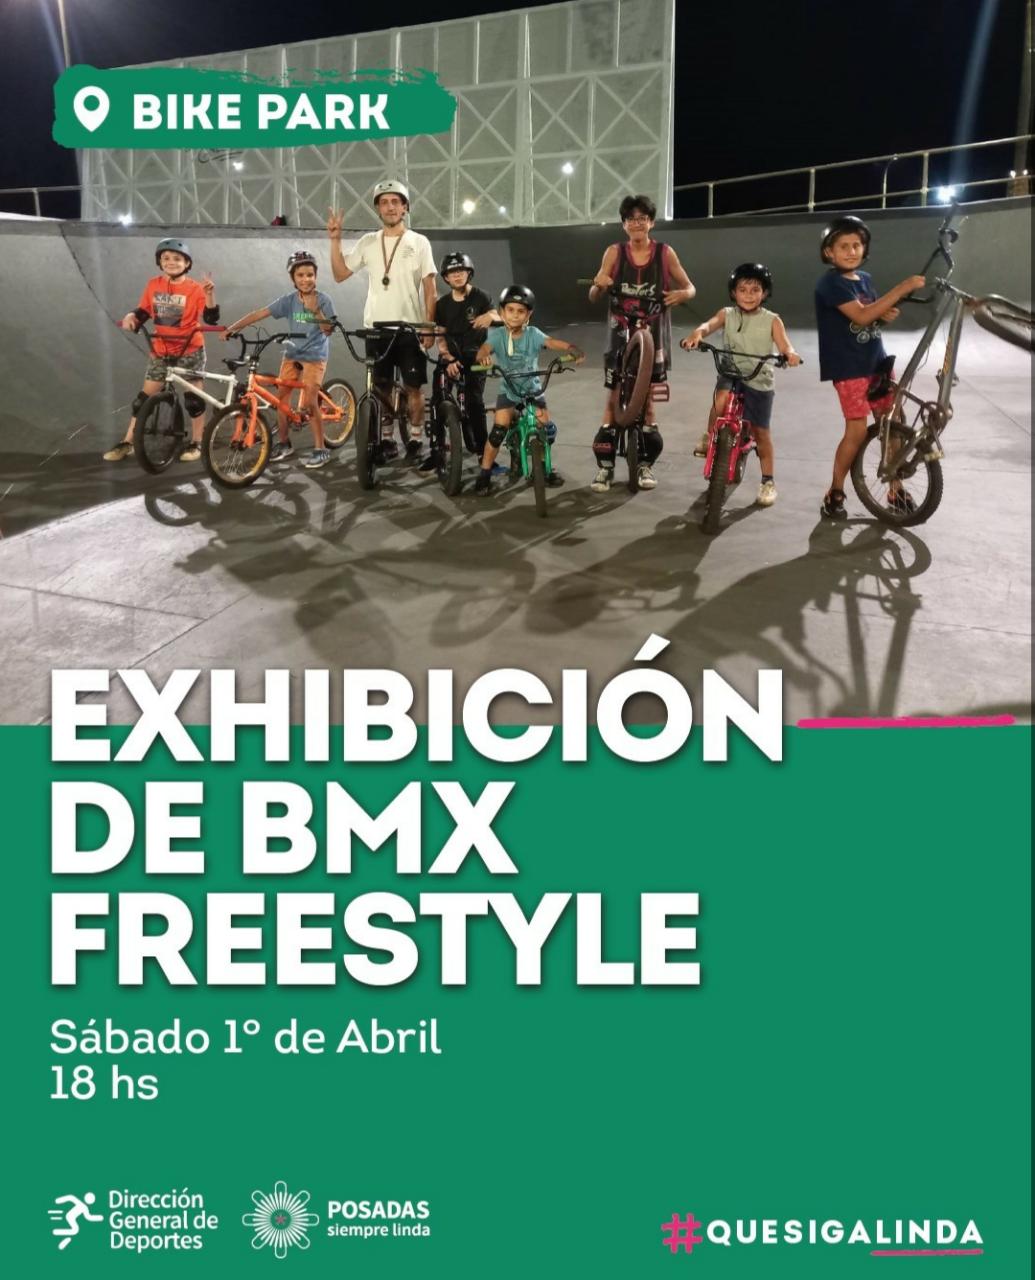 Exhibiciones de BMX Freestyle habrá este sábado en el Bike Park de la Costanera imagen-2